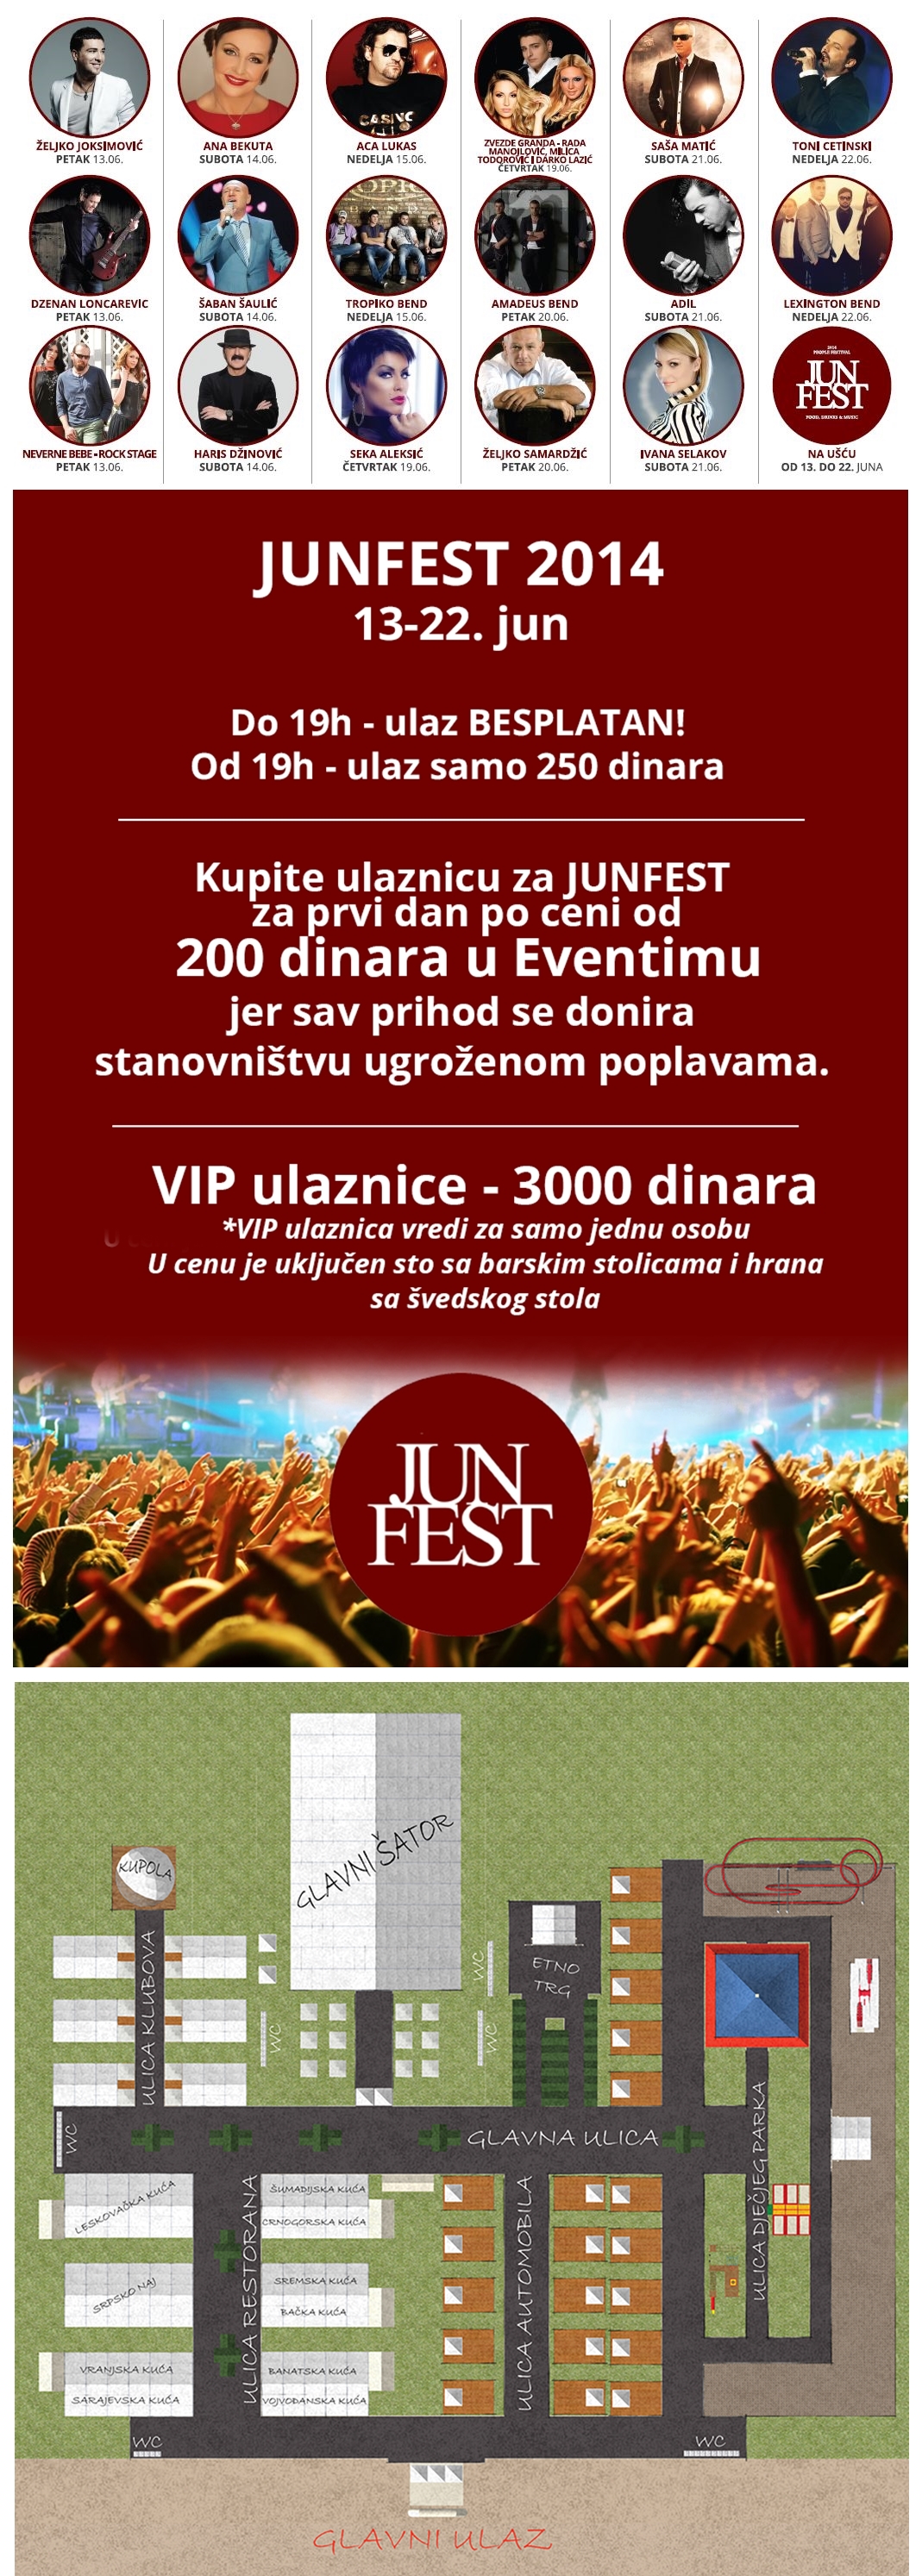 JUN FEST - Ušće Park, Tiket Klub